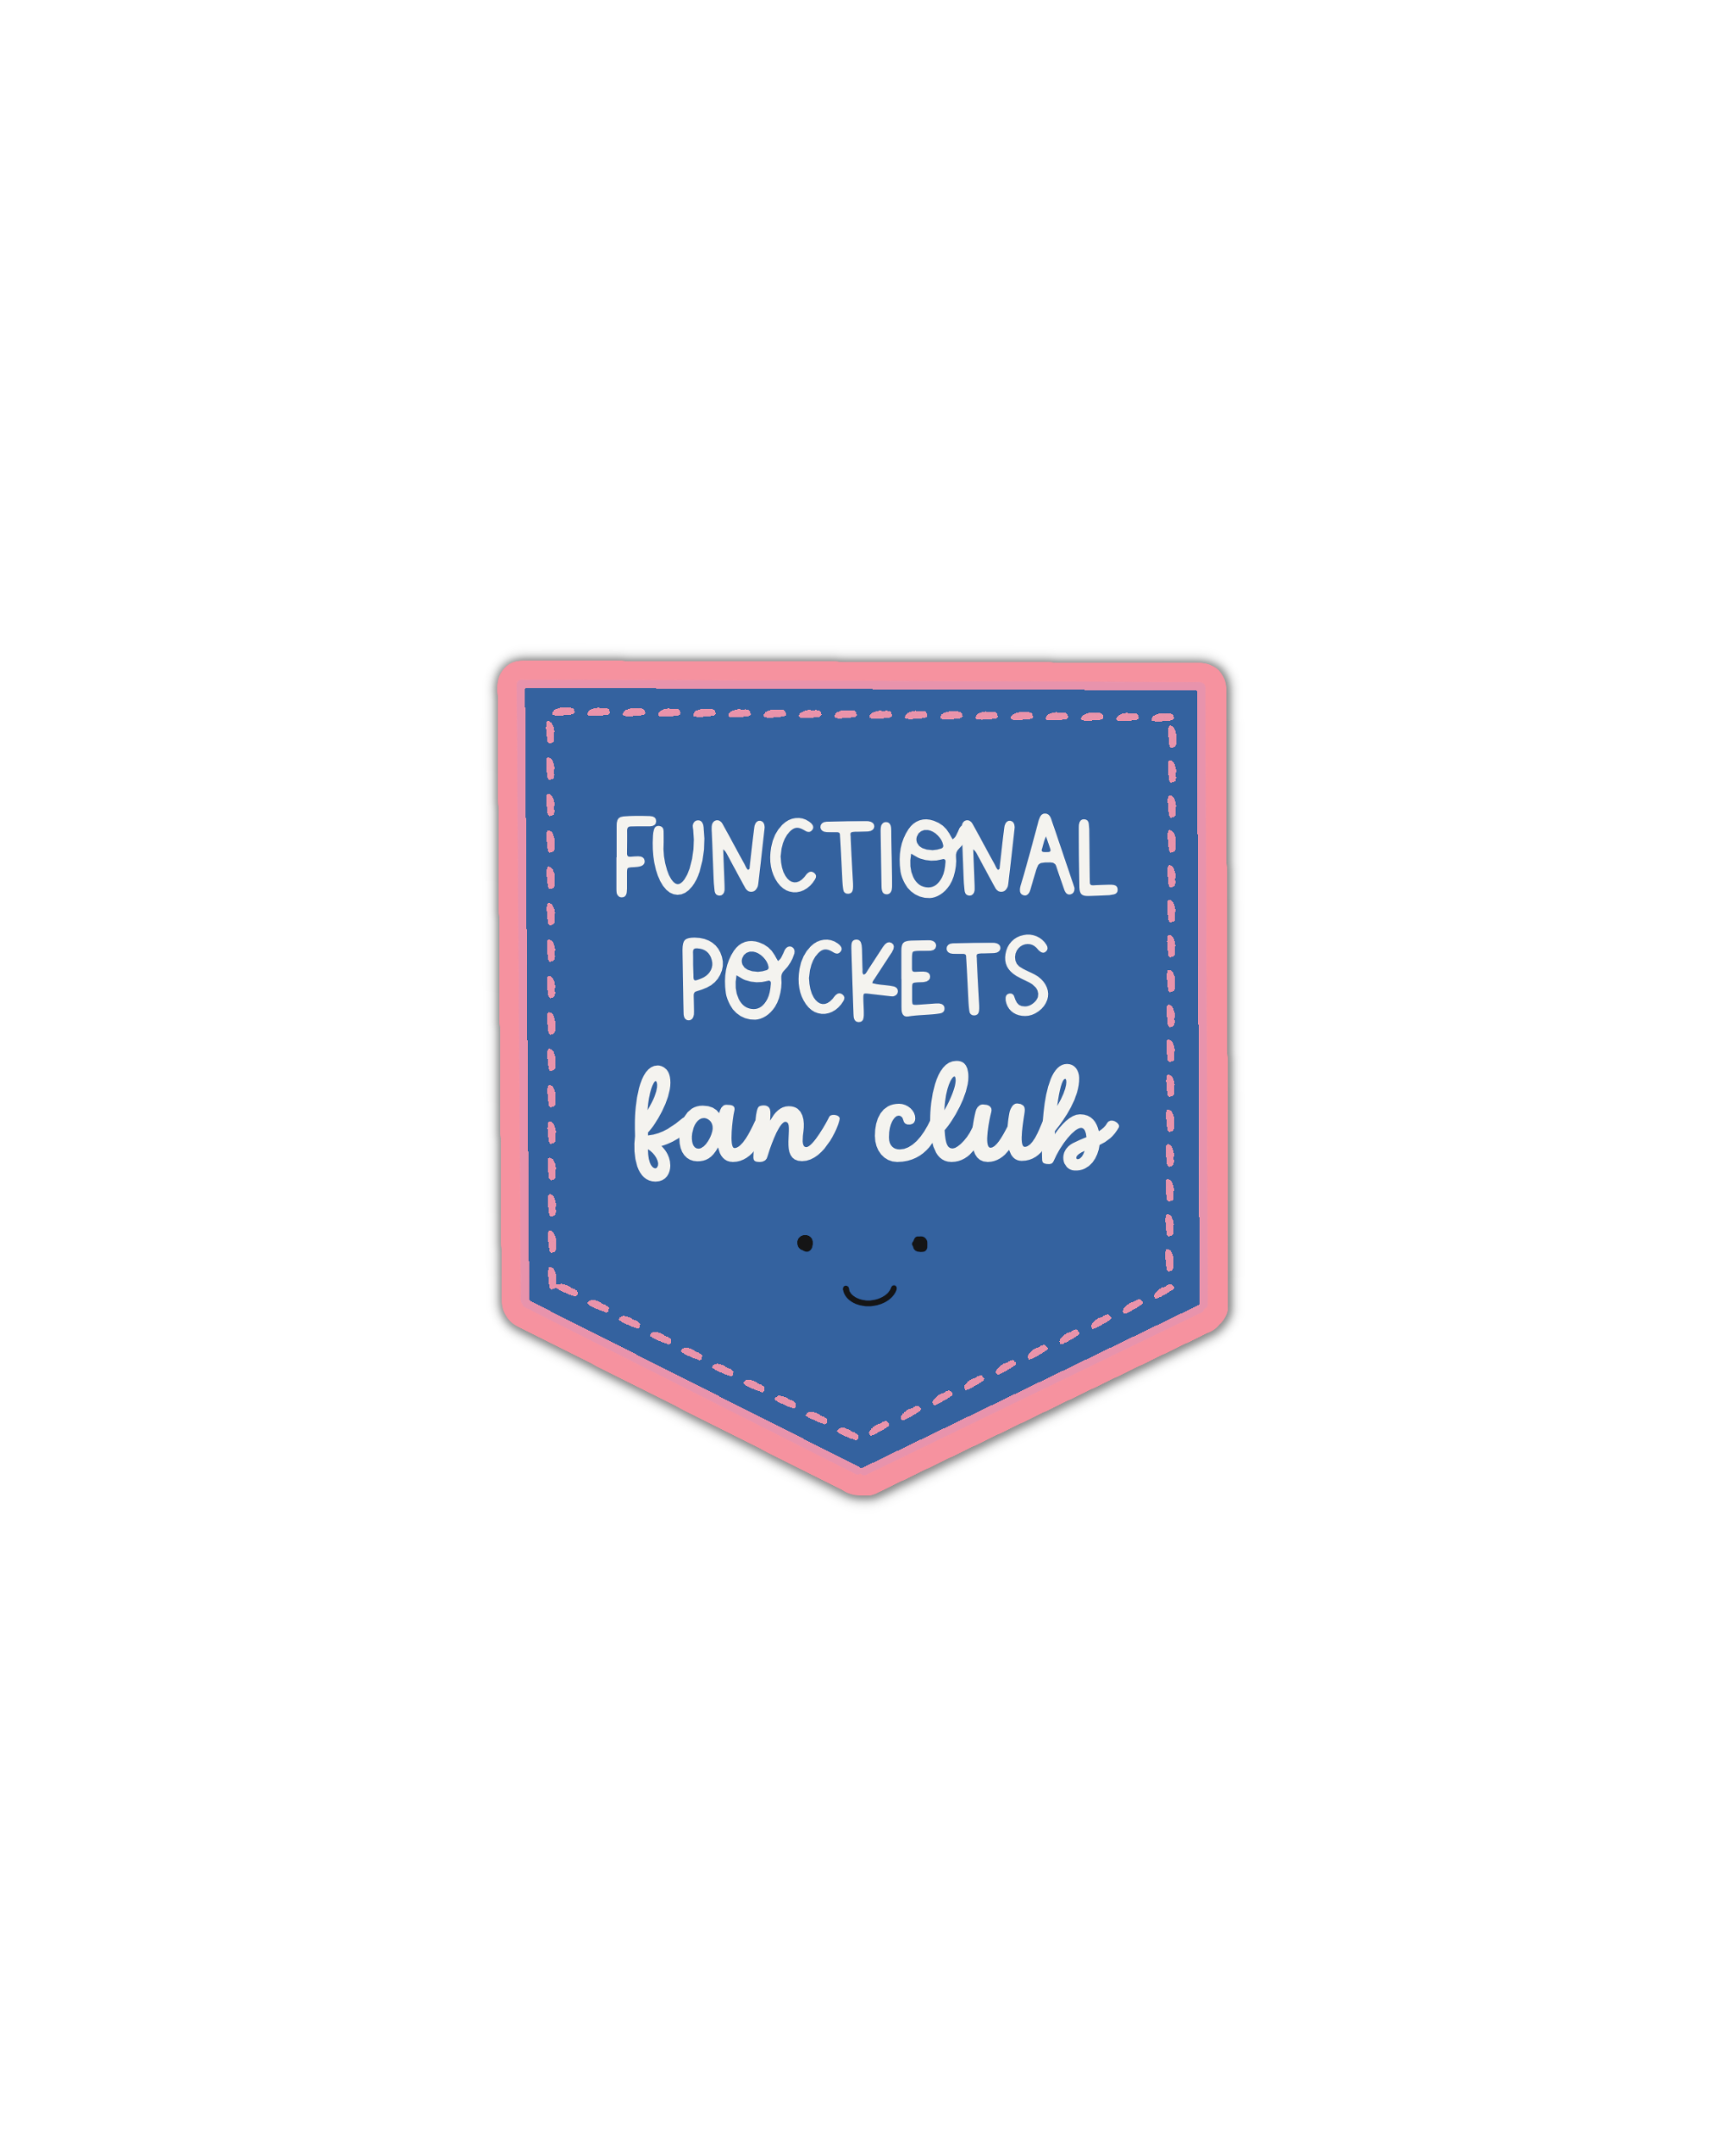 Functional pockets fan club vinyl sticker